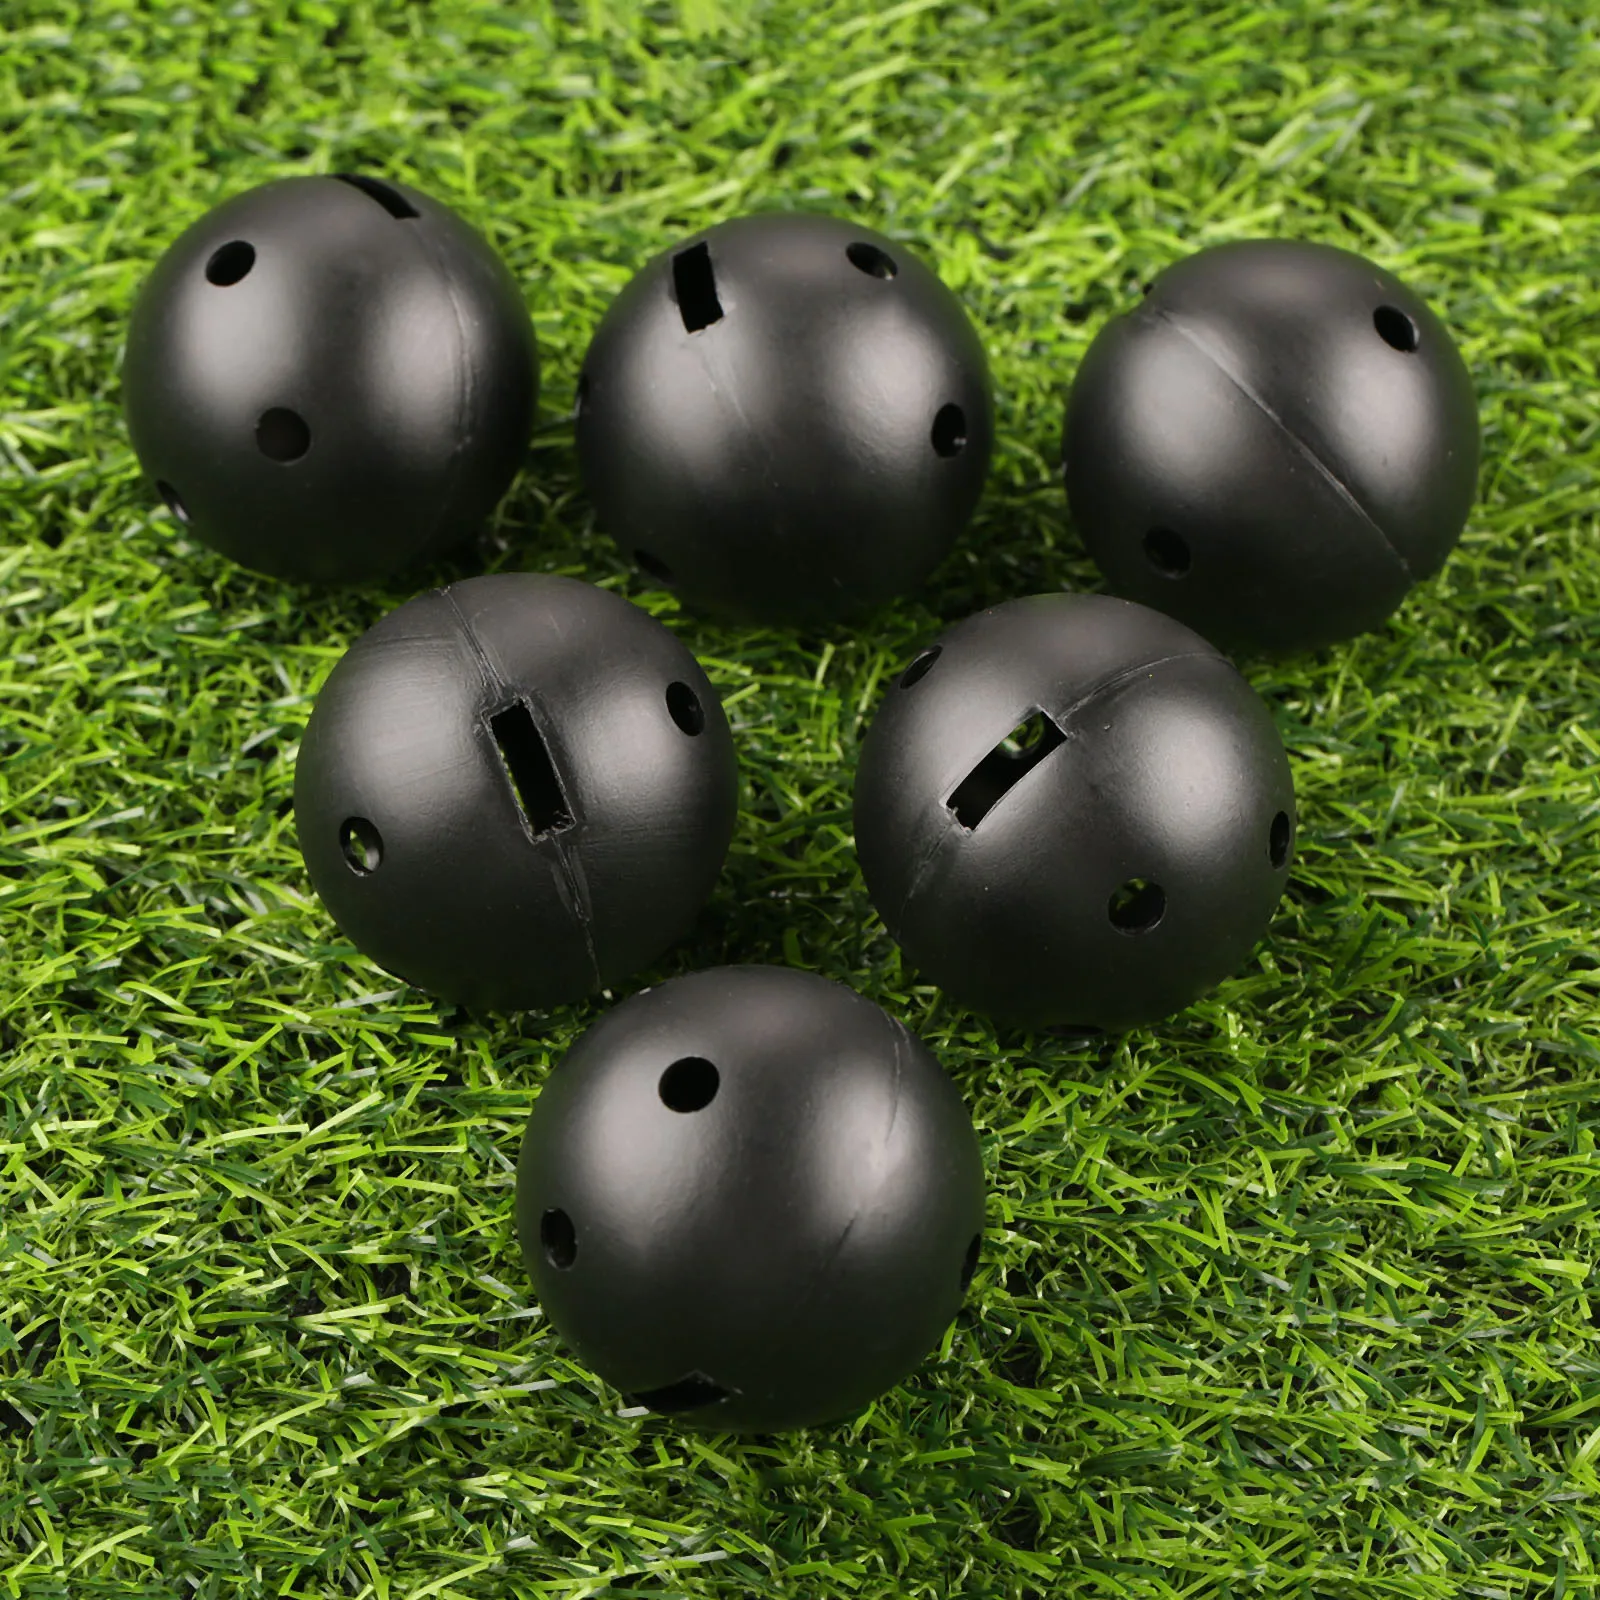 Gohantee 10 шт для дома и улицы мячи для обучения игре в гольф 44 мм Пластик мячи для гольфа 4 цвета выдувного формования сверления квадратных отверстий для игры в гольф полые шары - Цвет: Black